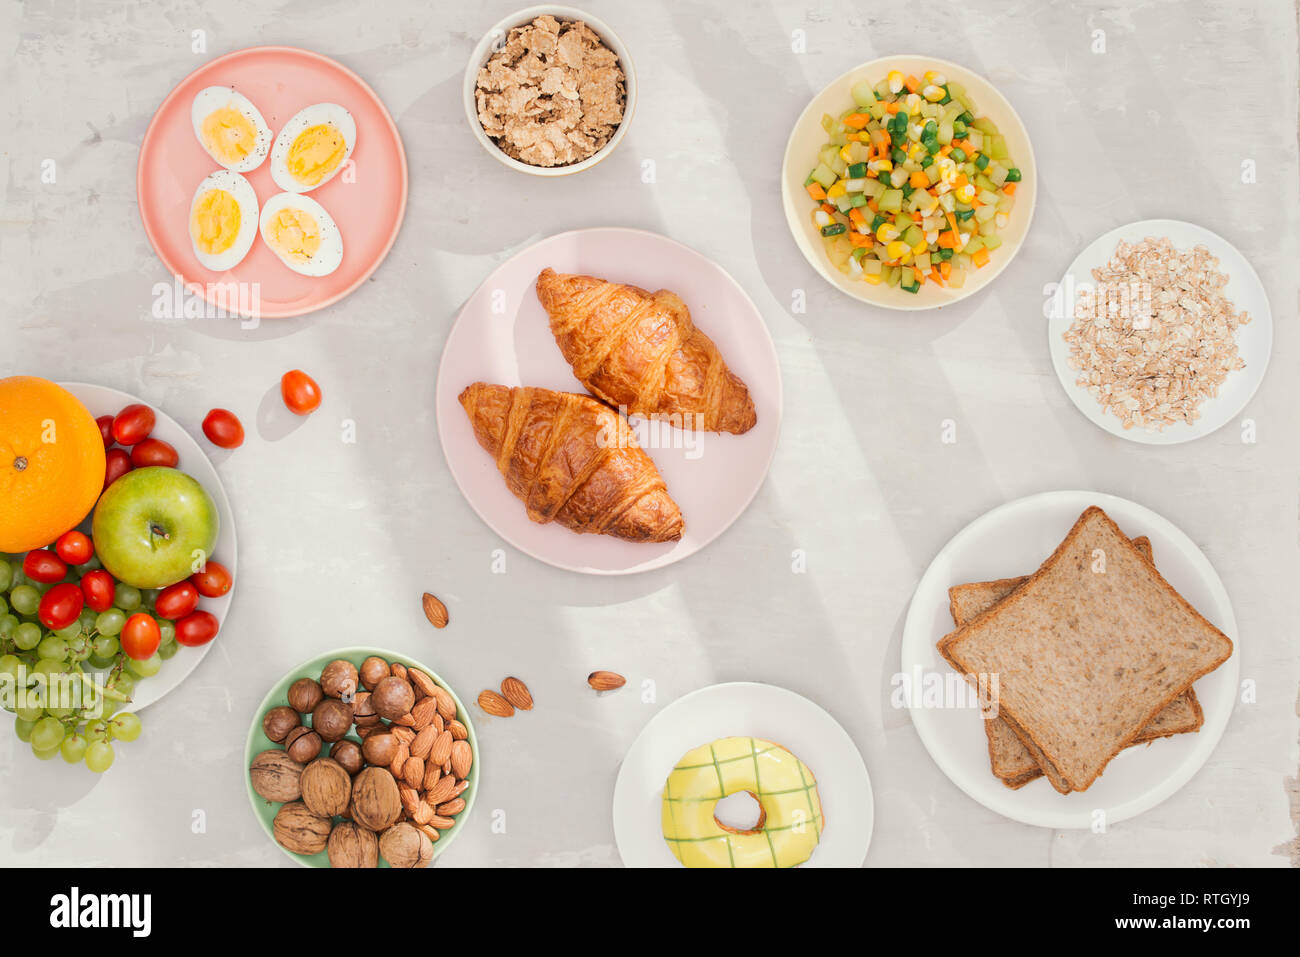 Gesundes Frühstück Zutaten auf Schwarz konkreten Hintergrund. Haferflocken, Mandeln Milch, Nüsse, Früchte und Beeren. Gesunder Lebensstil, Diät, gesund essen Stockfoto